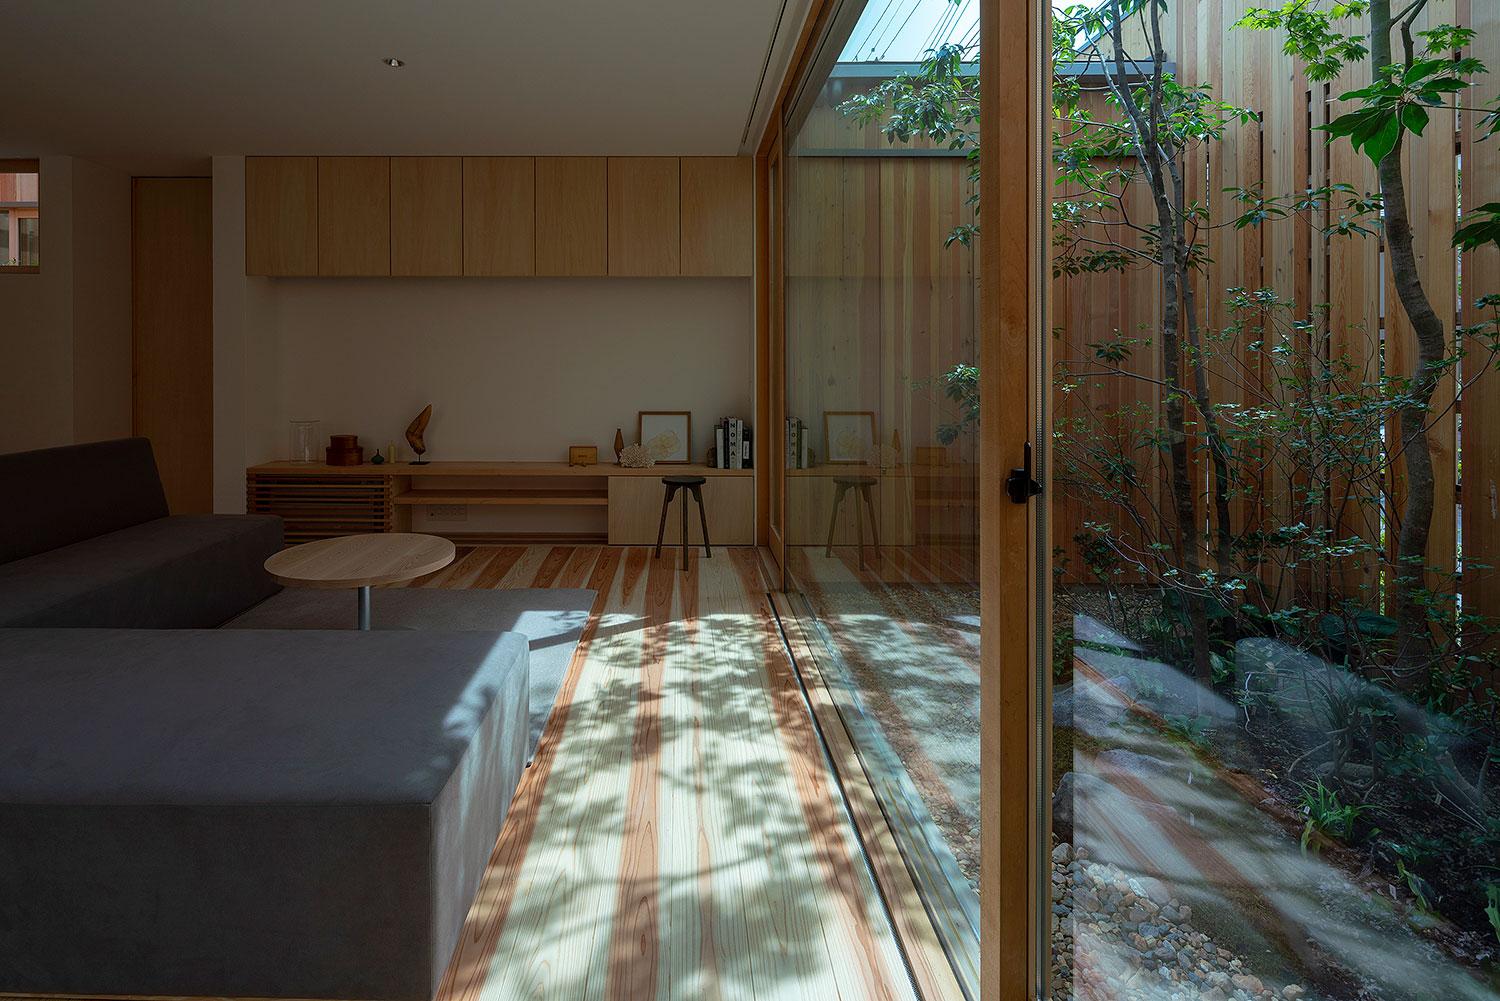 最美的風景就在窗外，在日本簡約木造平房內體驗四季動人景緻